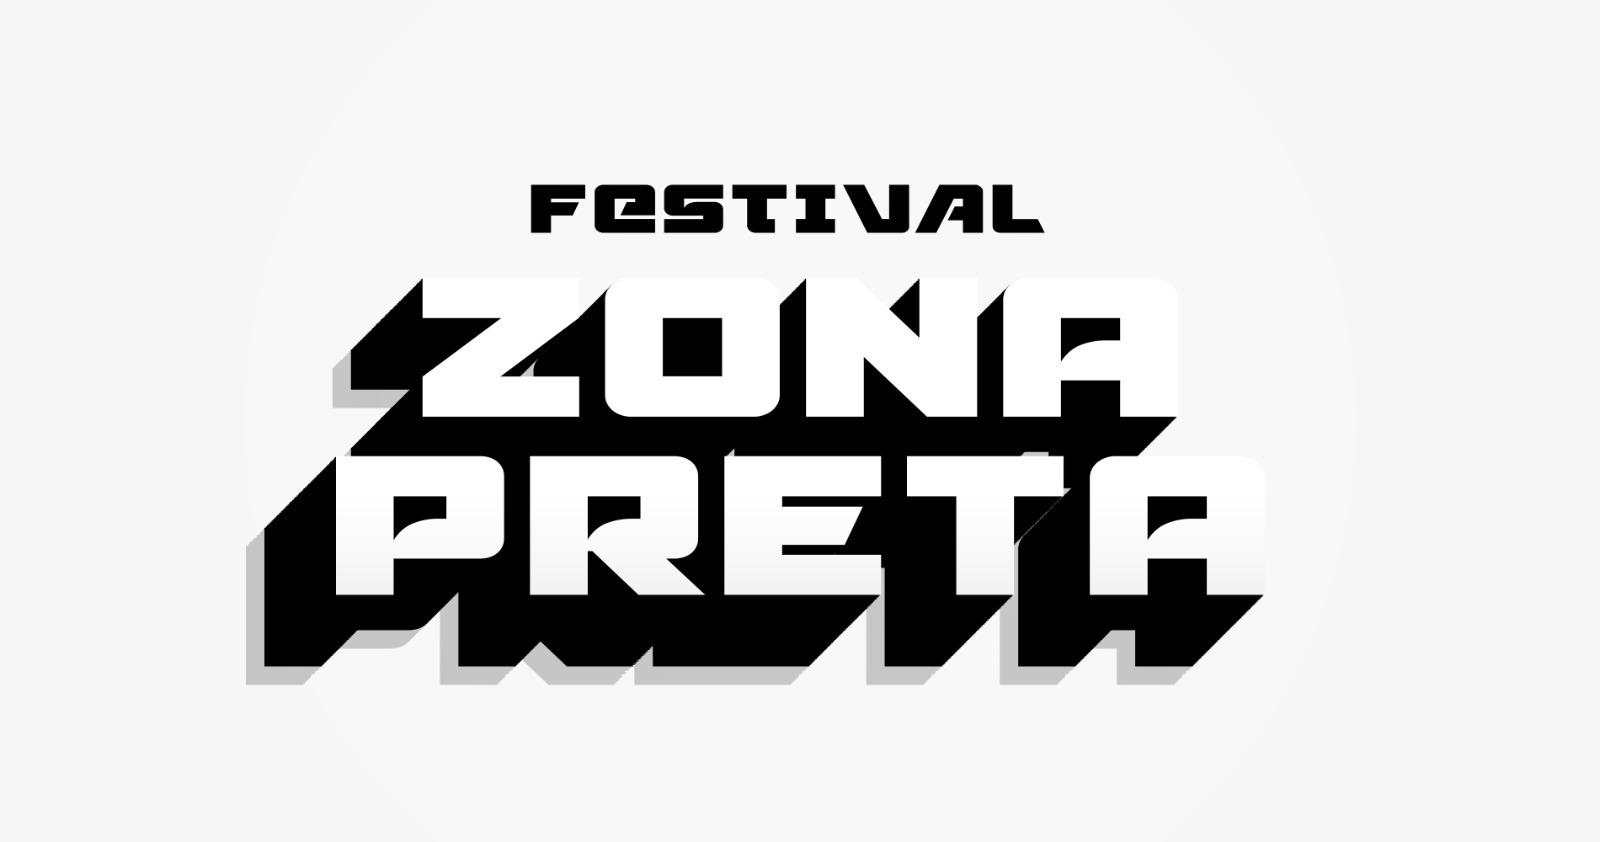 Com programação gratuita, 'Festival Zona Preta' realiza a 2ª edição (Foto: Divulgação)